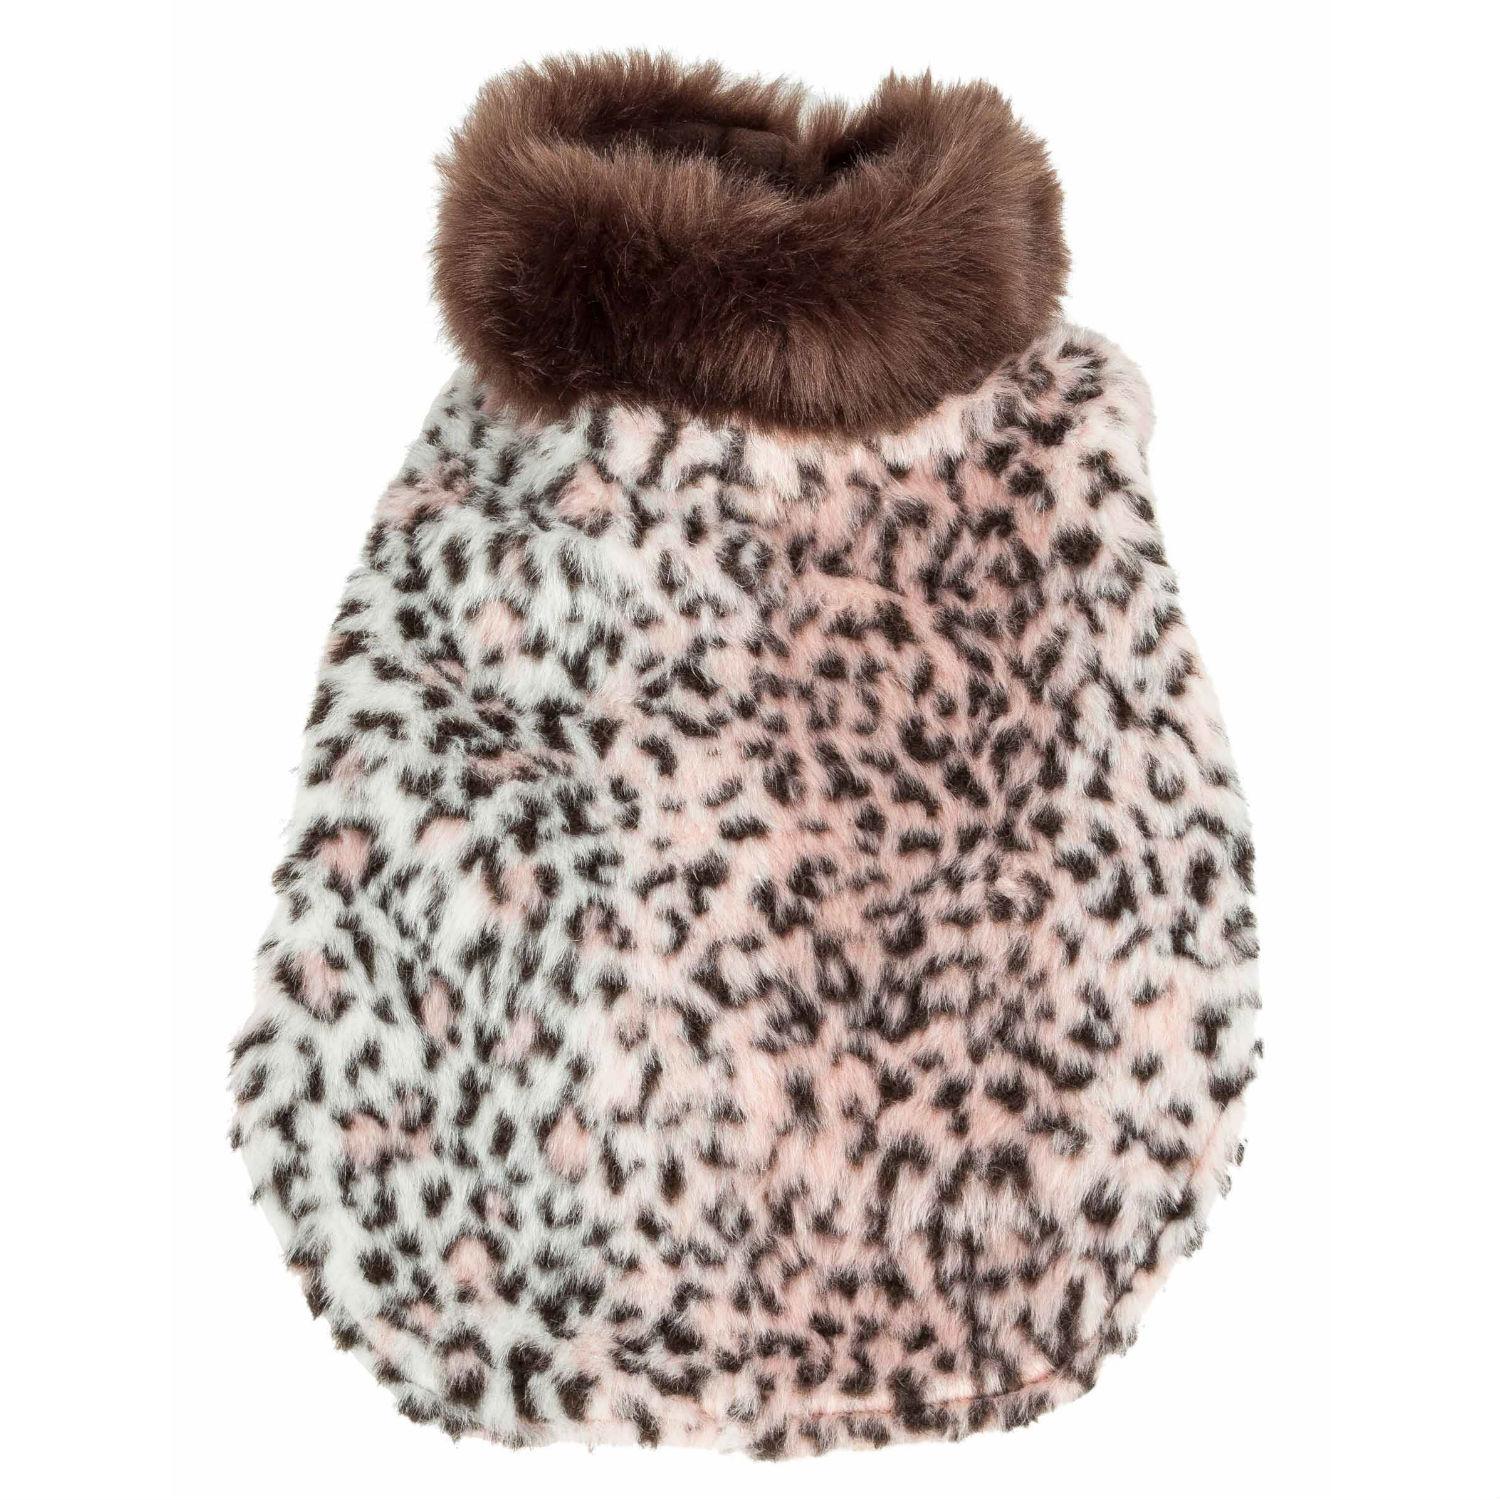 Pet Life Luxe Furracious Cheetah Mink Fur Dog Coat - Light Pink, Black and Brown